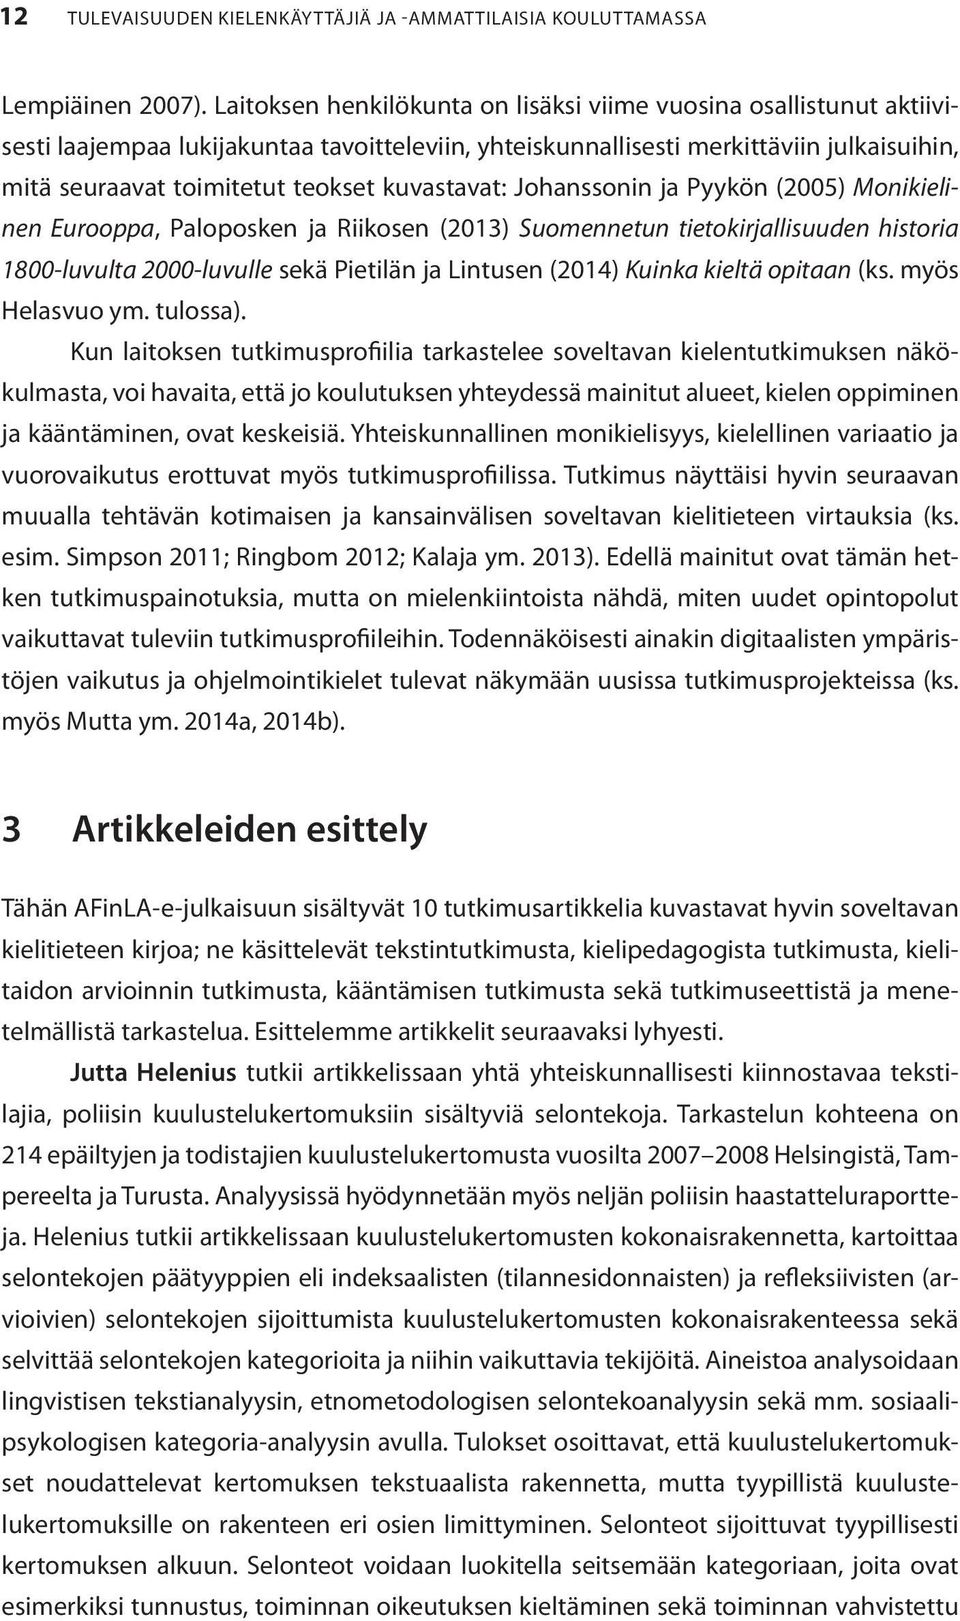 kuvastavat: Johanssonin ja Pyykön (2005) Monikielinen Eurooppa, Paloposken ja Riikosen (2013) Suomennetun tietokirjallisuuden historia 1800-luvulta 2000-luvulle sekä Pietilän ja Lintusen (2014)